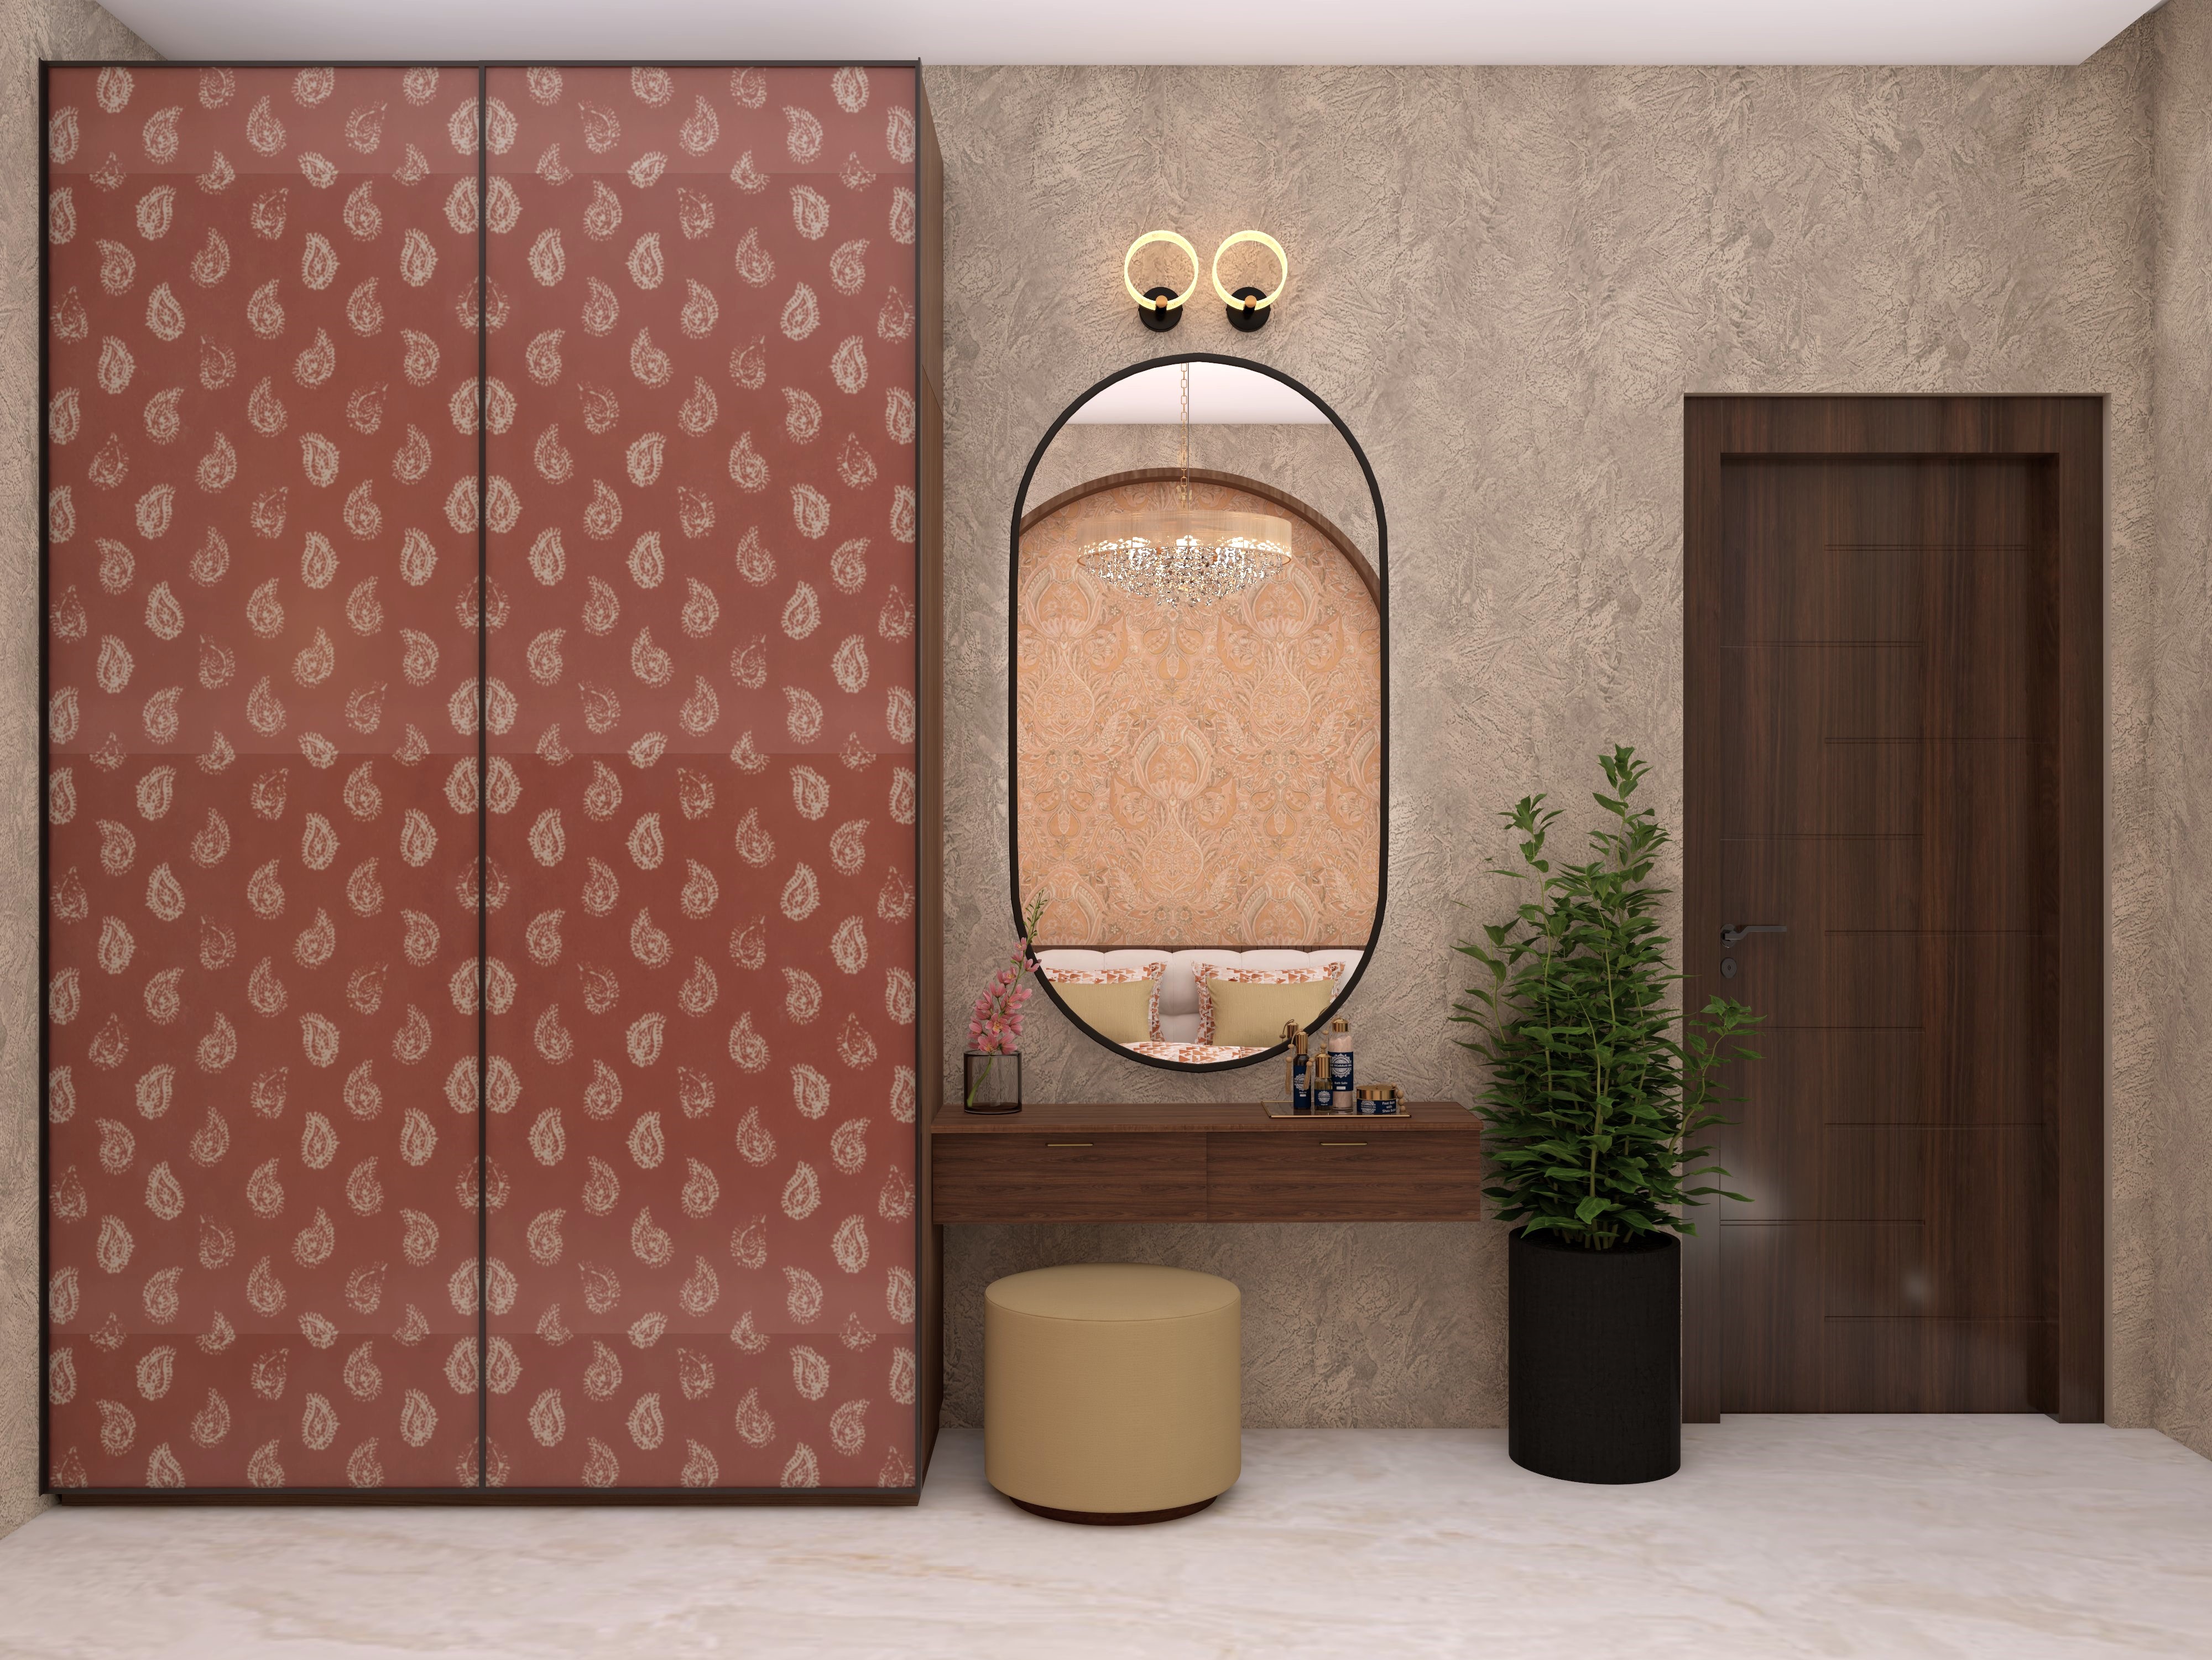 Sliding wardrobe laminate with Nilaya wallpaper and capsule shaped mirror - Beautiful Homes